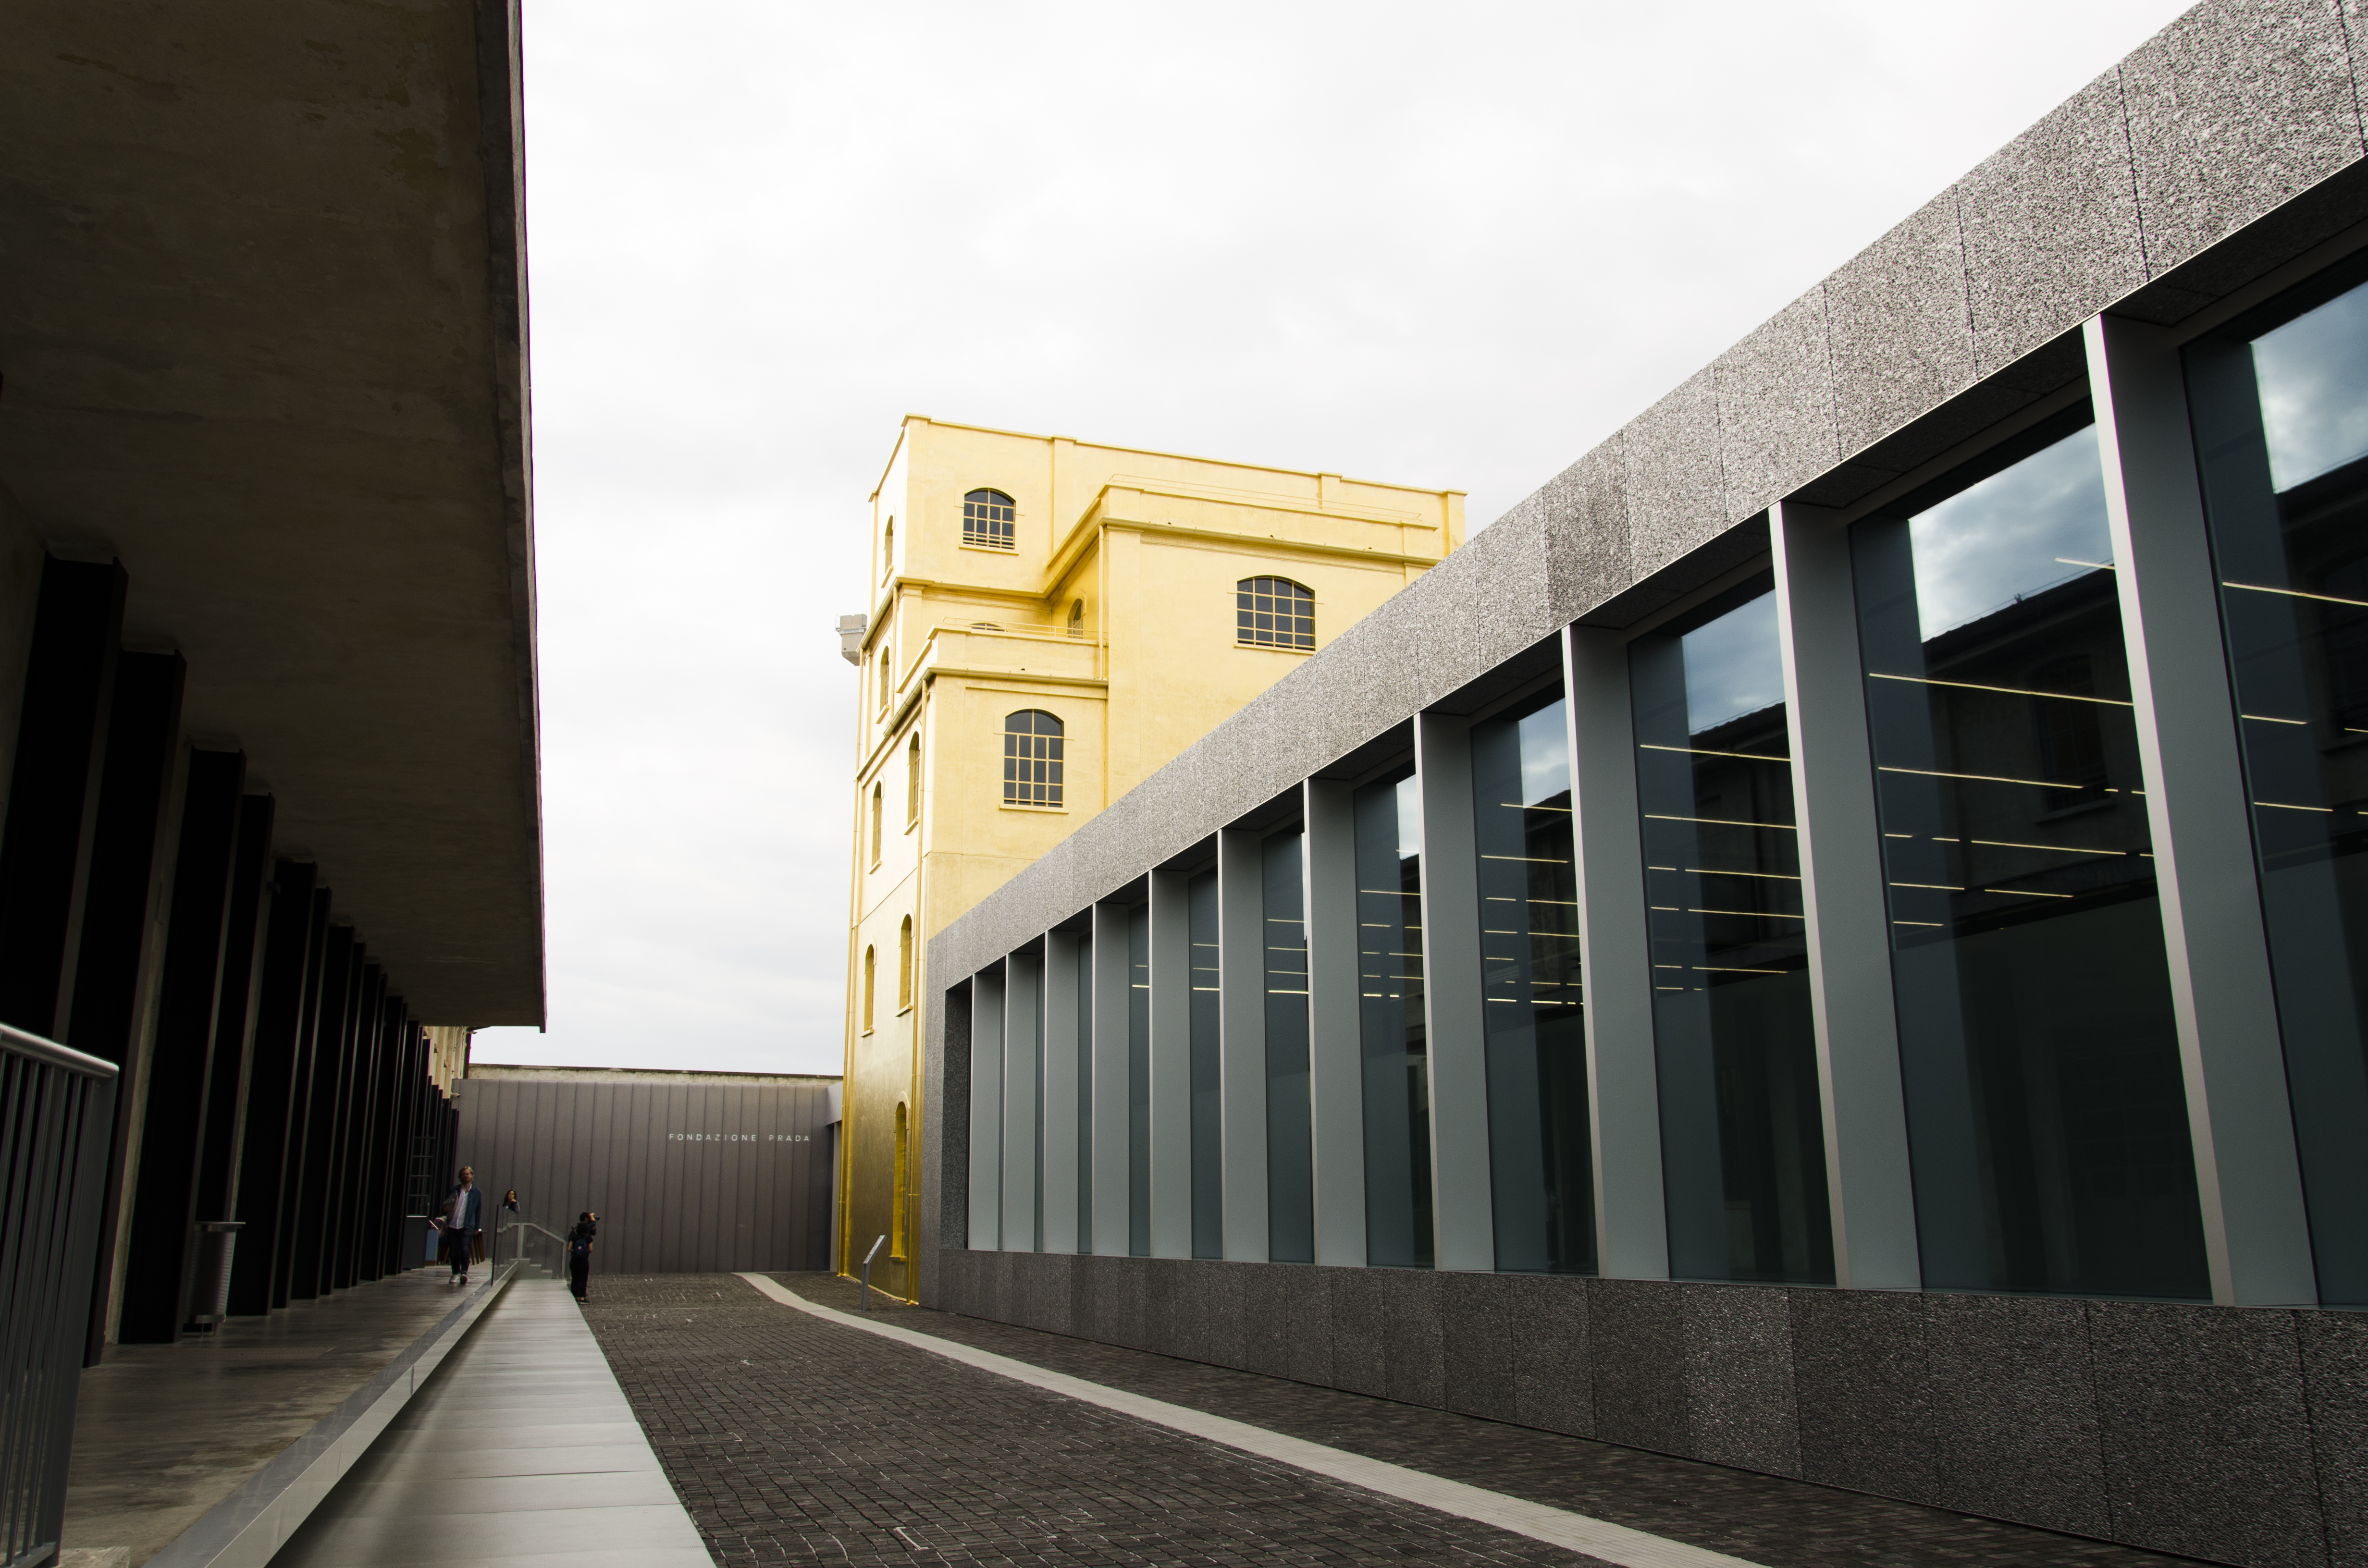 Rem Koolhaas premieňa a dostavuje areál liehovaru z roku 1910 na kultúrno-umeleckú inštitúciu Fondazione Prada.